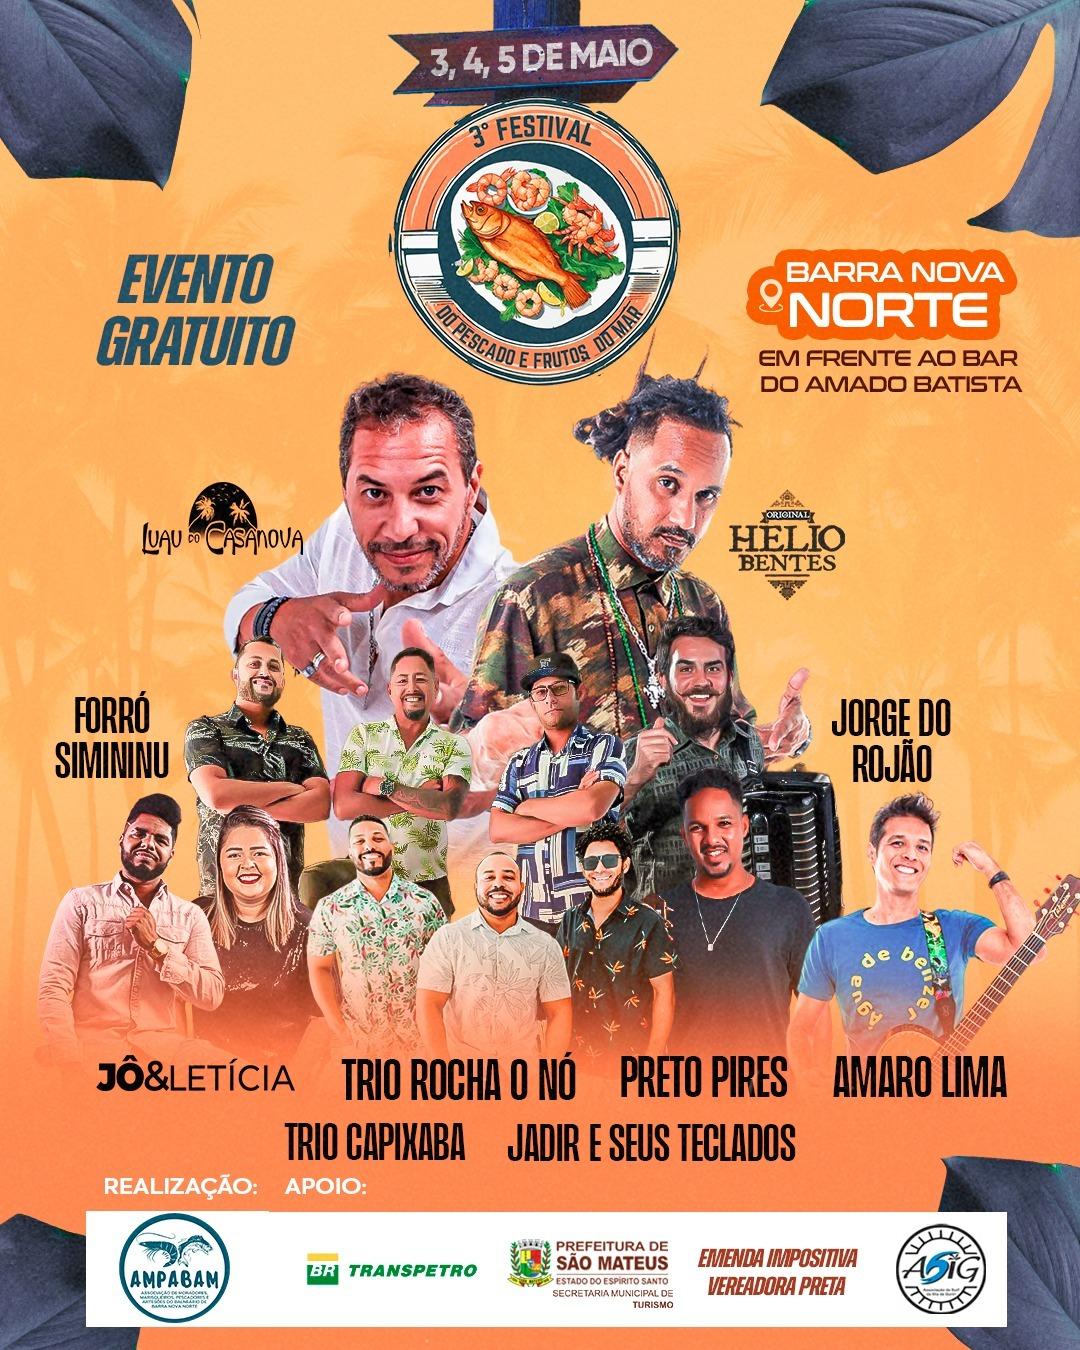 Barra Nova Norte convida: vai rolar o 3º festival do pescado e frutos do mar, recheado de atrações musicais, em São Mateus, ES